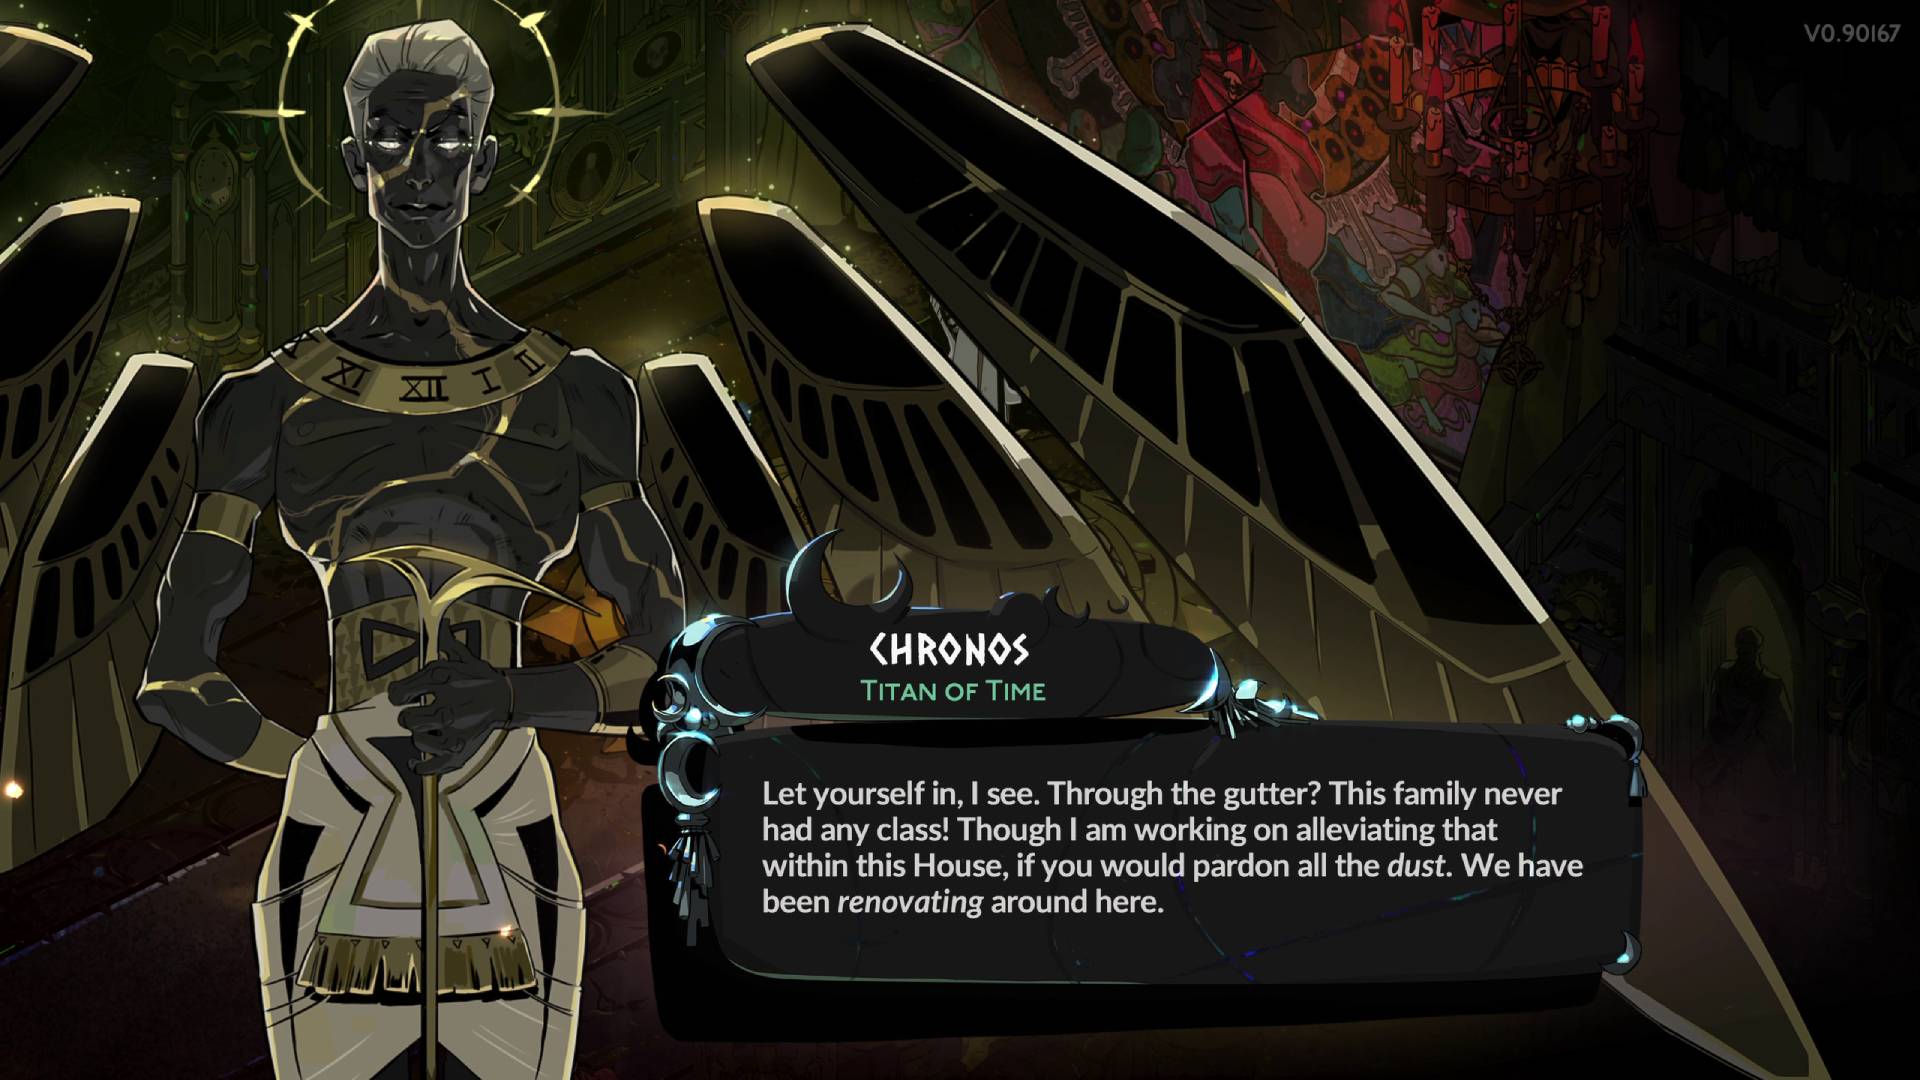 Hades 2-figurer Titan of Time Chronos